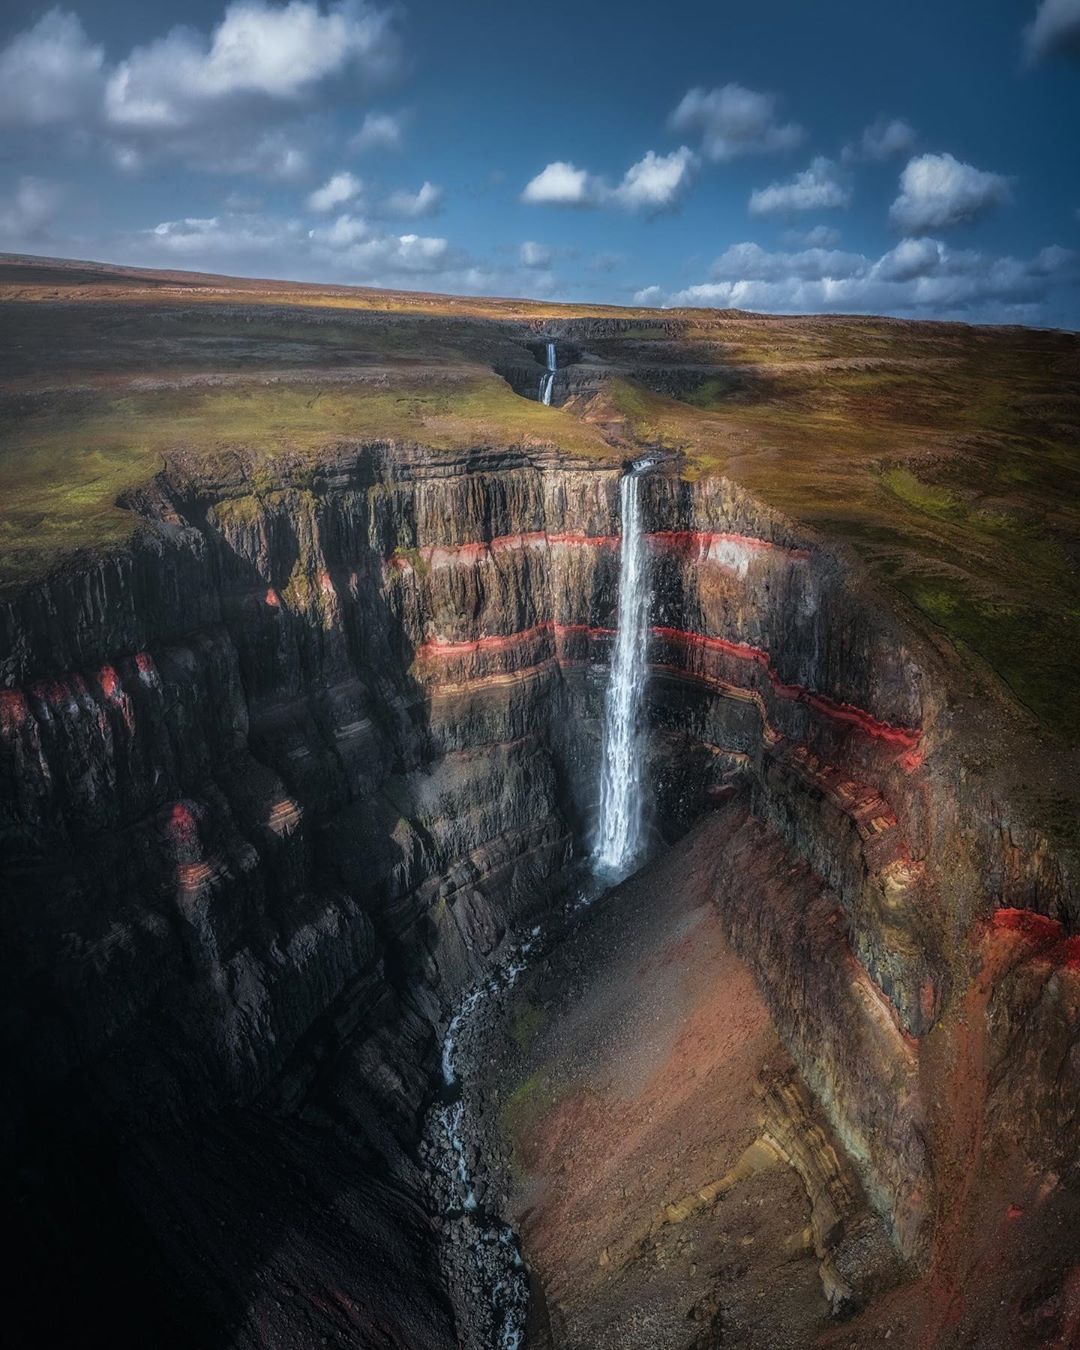 Планета в чудо-объективе Тимо Хайнца Хайнц, через, более, фотограф, этого, Исландии, снимок, Каждый, настроение, реальностью», атмосфера, которую, стала, которая, мечтой, призму, собственную, миром, красотой, передать